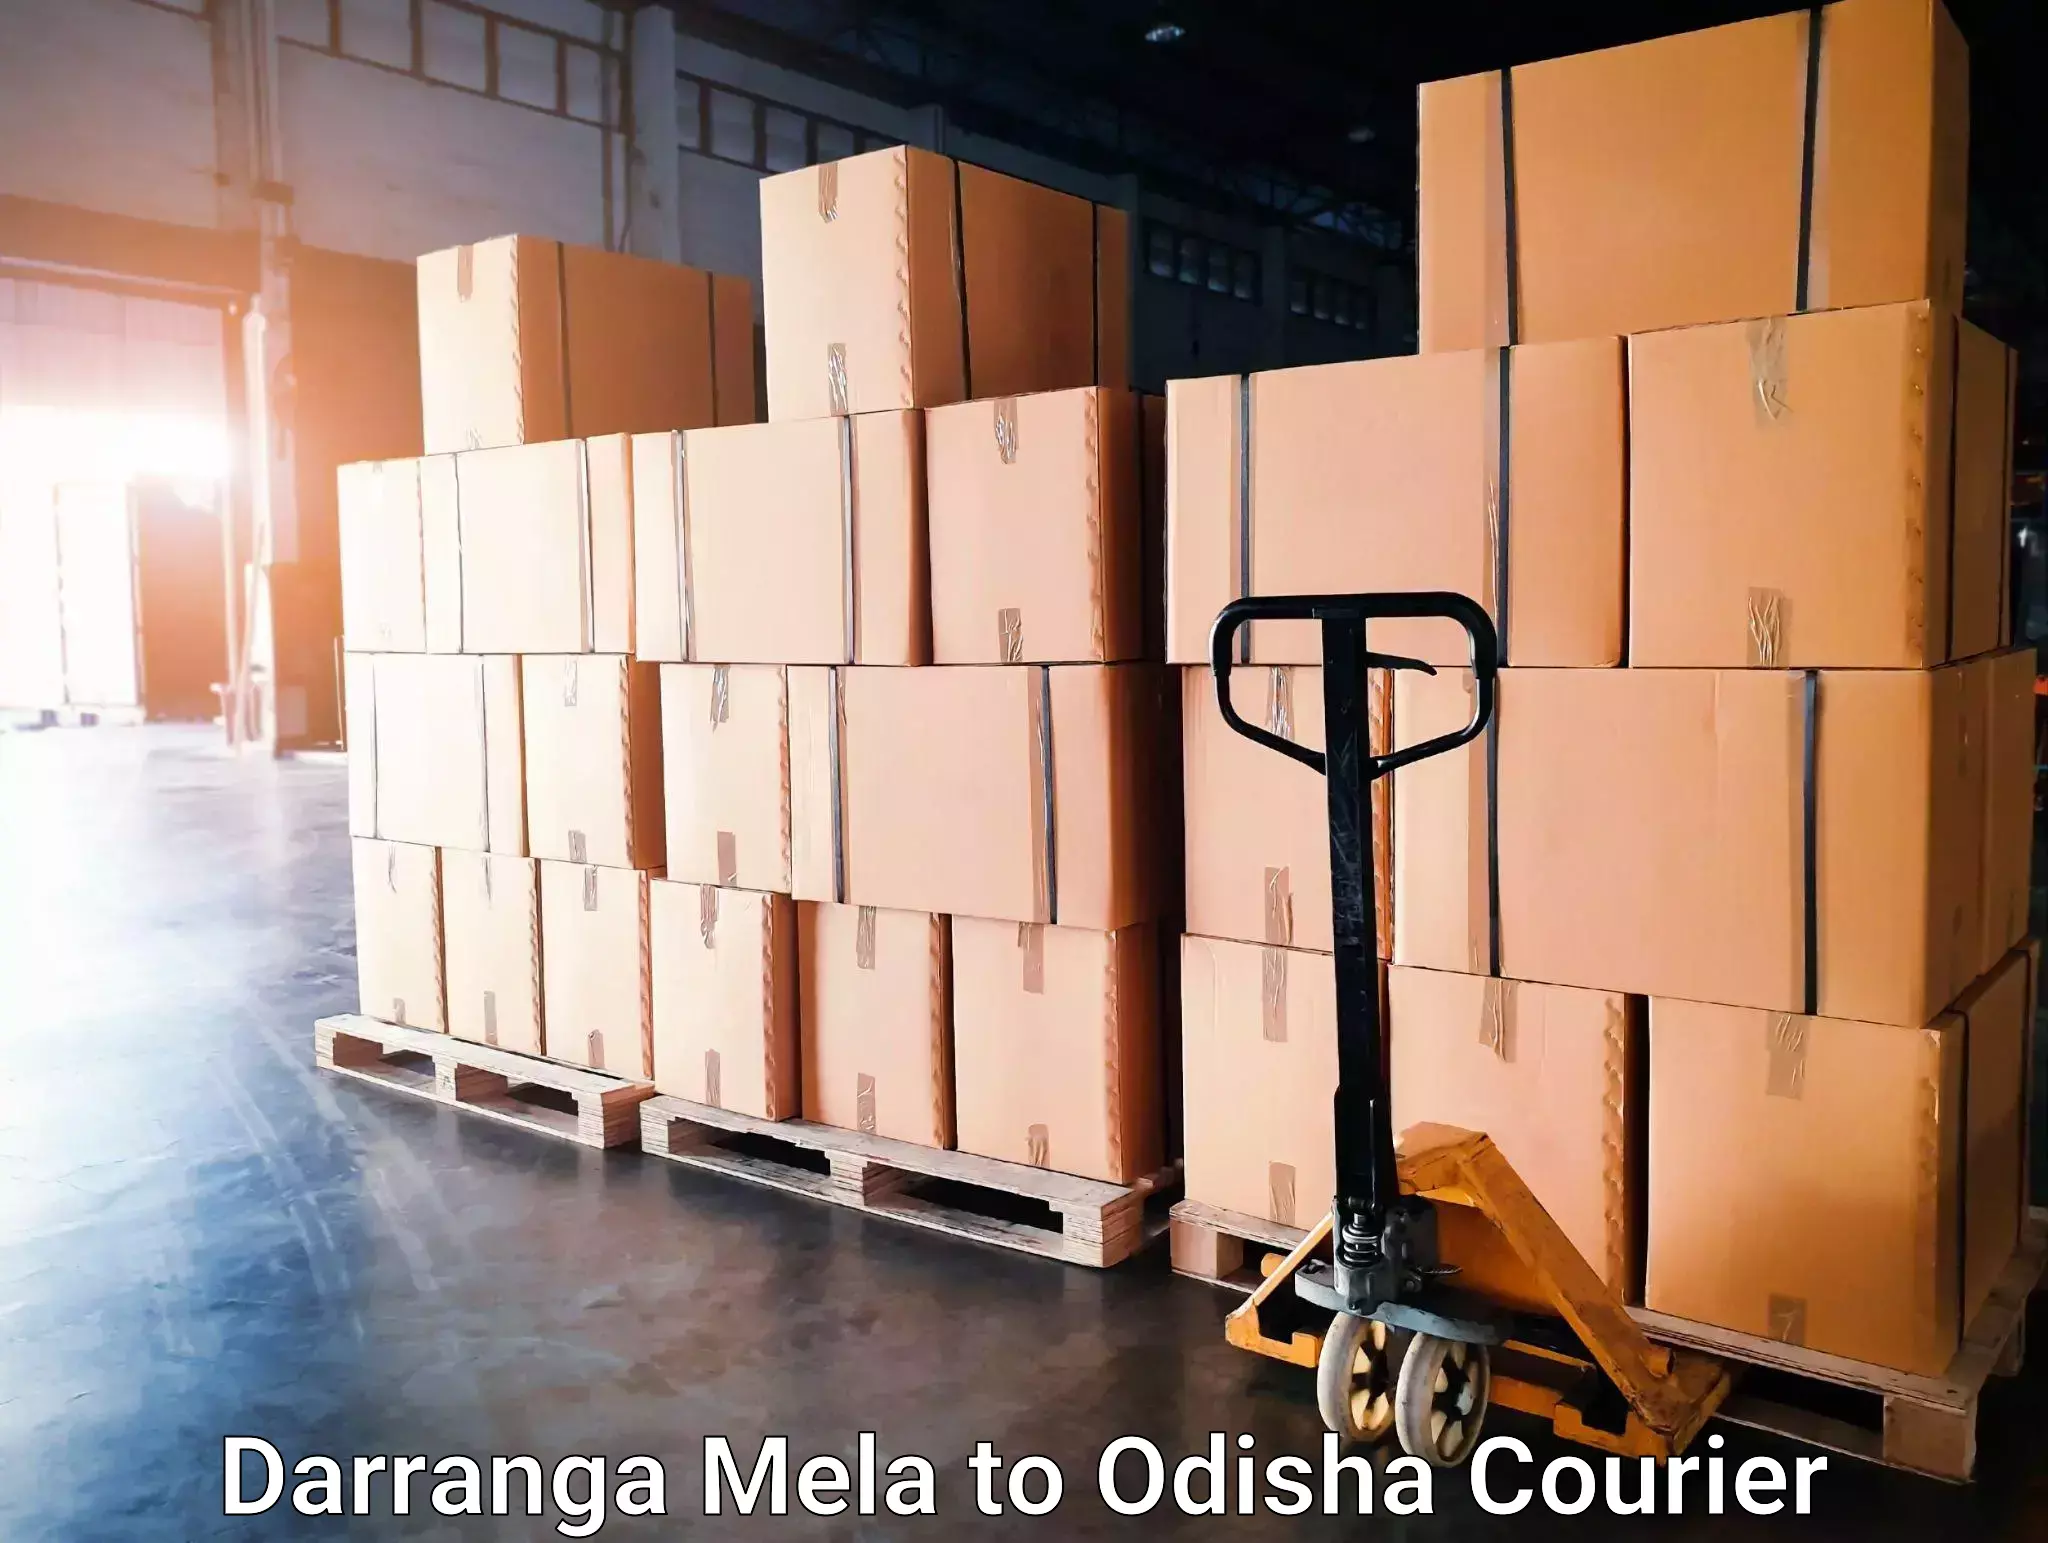 Efficient courier operations Darranga Mela to Dhamara